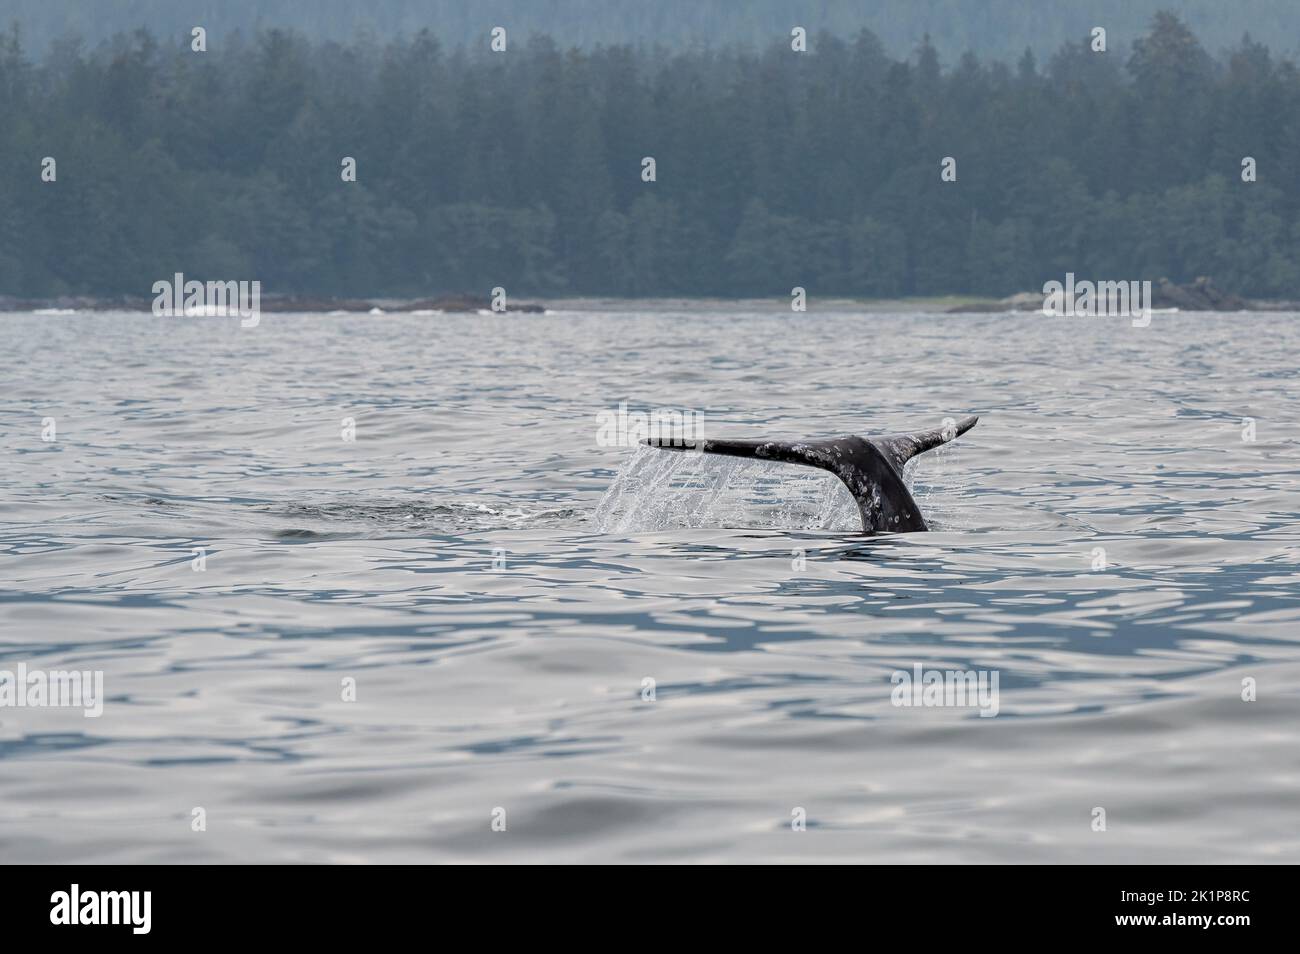 Cola de ballena gris (Eschrichtius robustus) en el tour de avistamiento de ballenas, Tofino, Isla de Vancouver, Columbia Británica, Canadá. Foto de stock